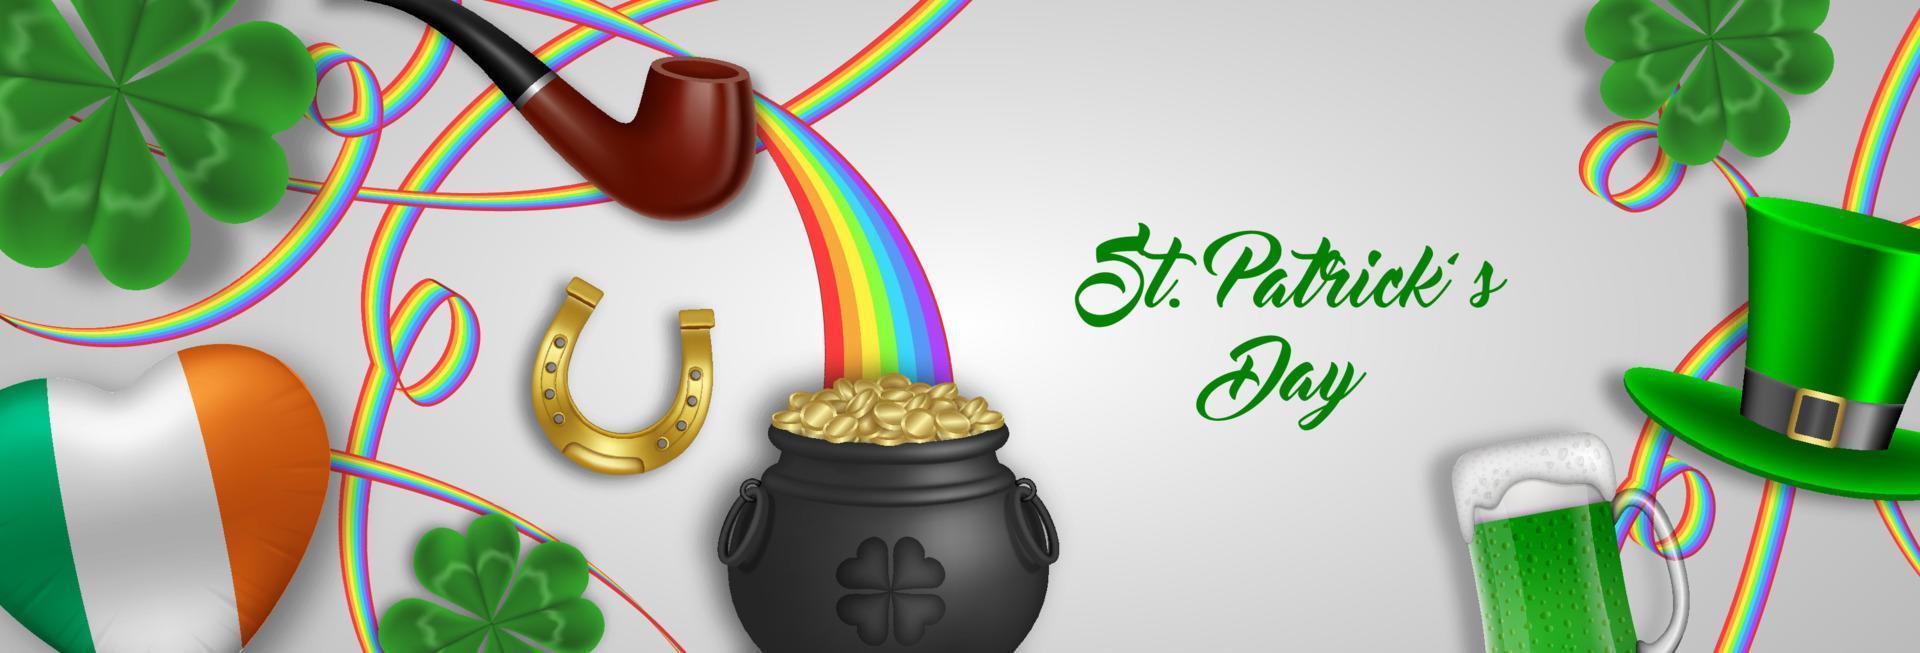 St. Patrick's Day Banner mit irischen Elementen und Symbolen vektor